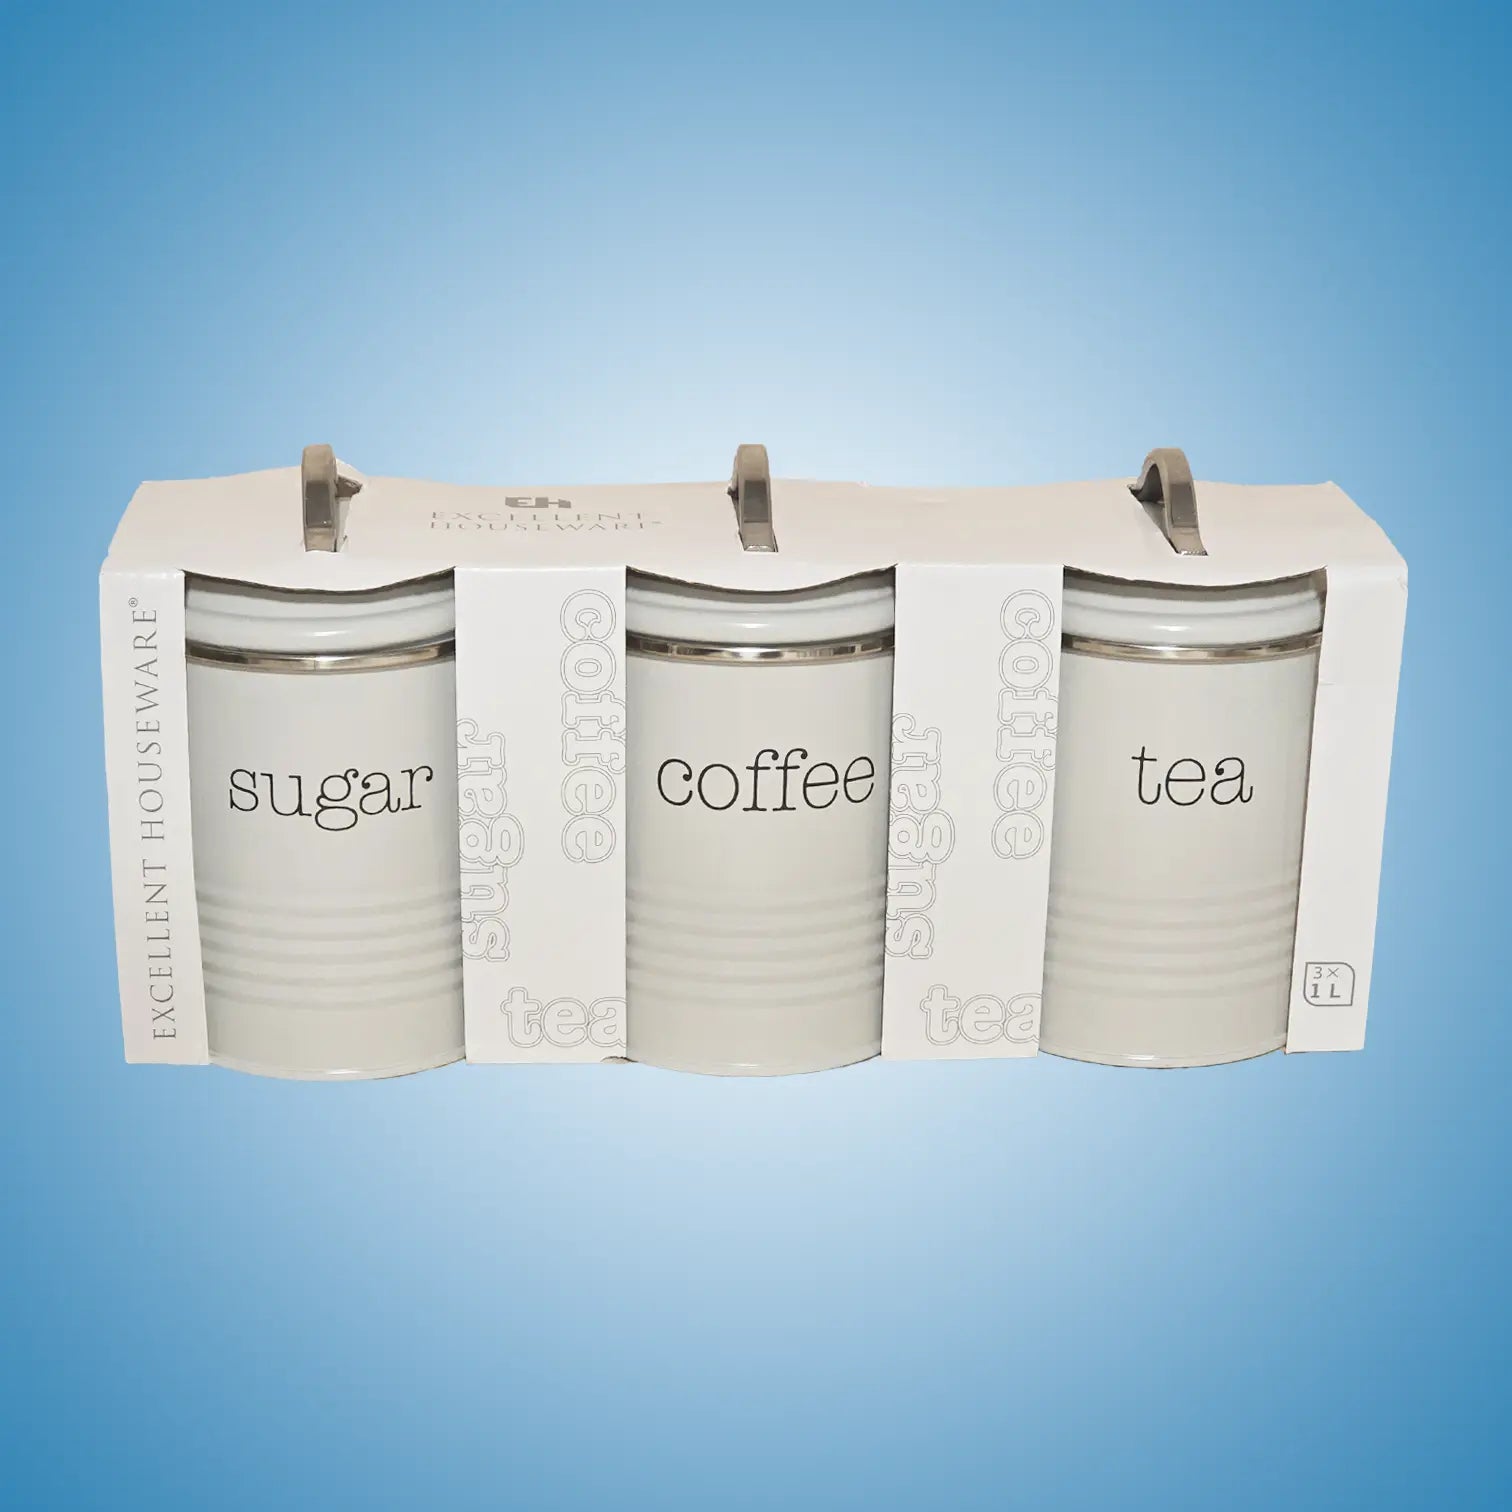 Sett med 3 kjøkkenbeholdere til oppbevaring av sukker, kaffe og te i grå farge